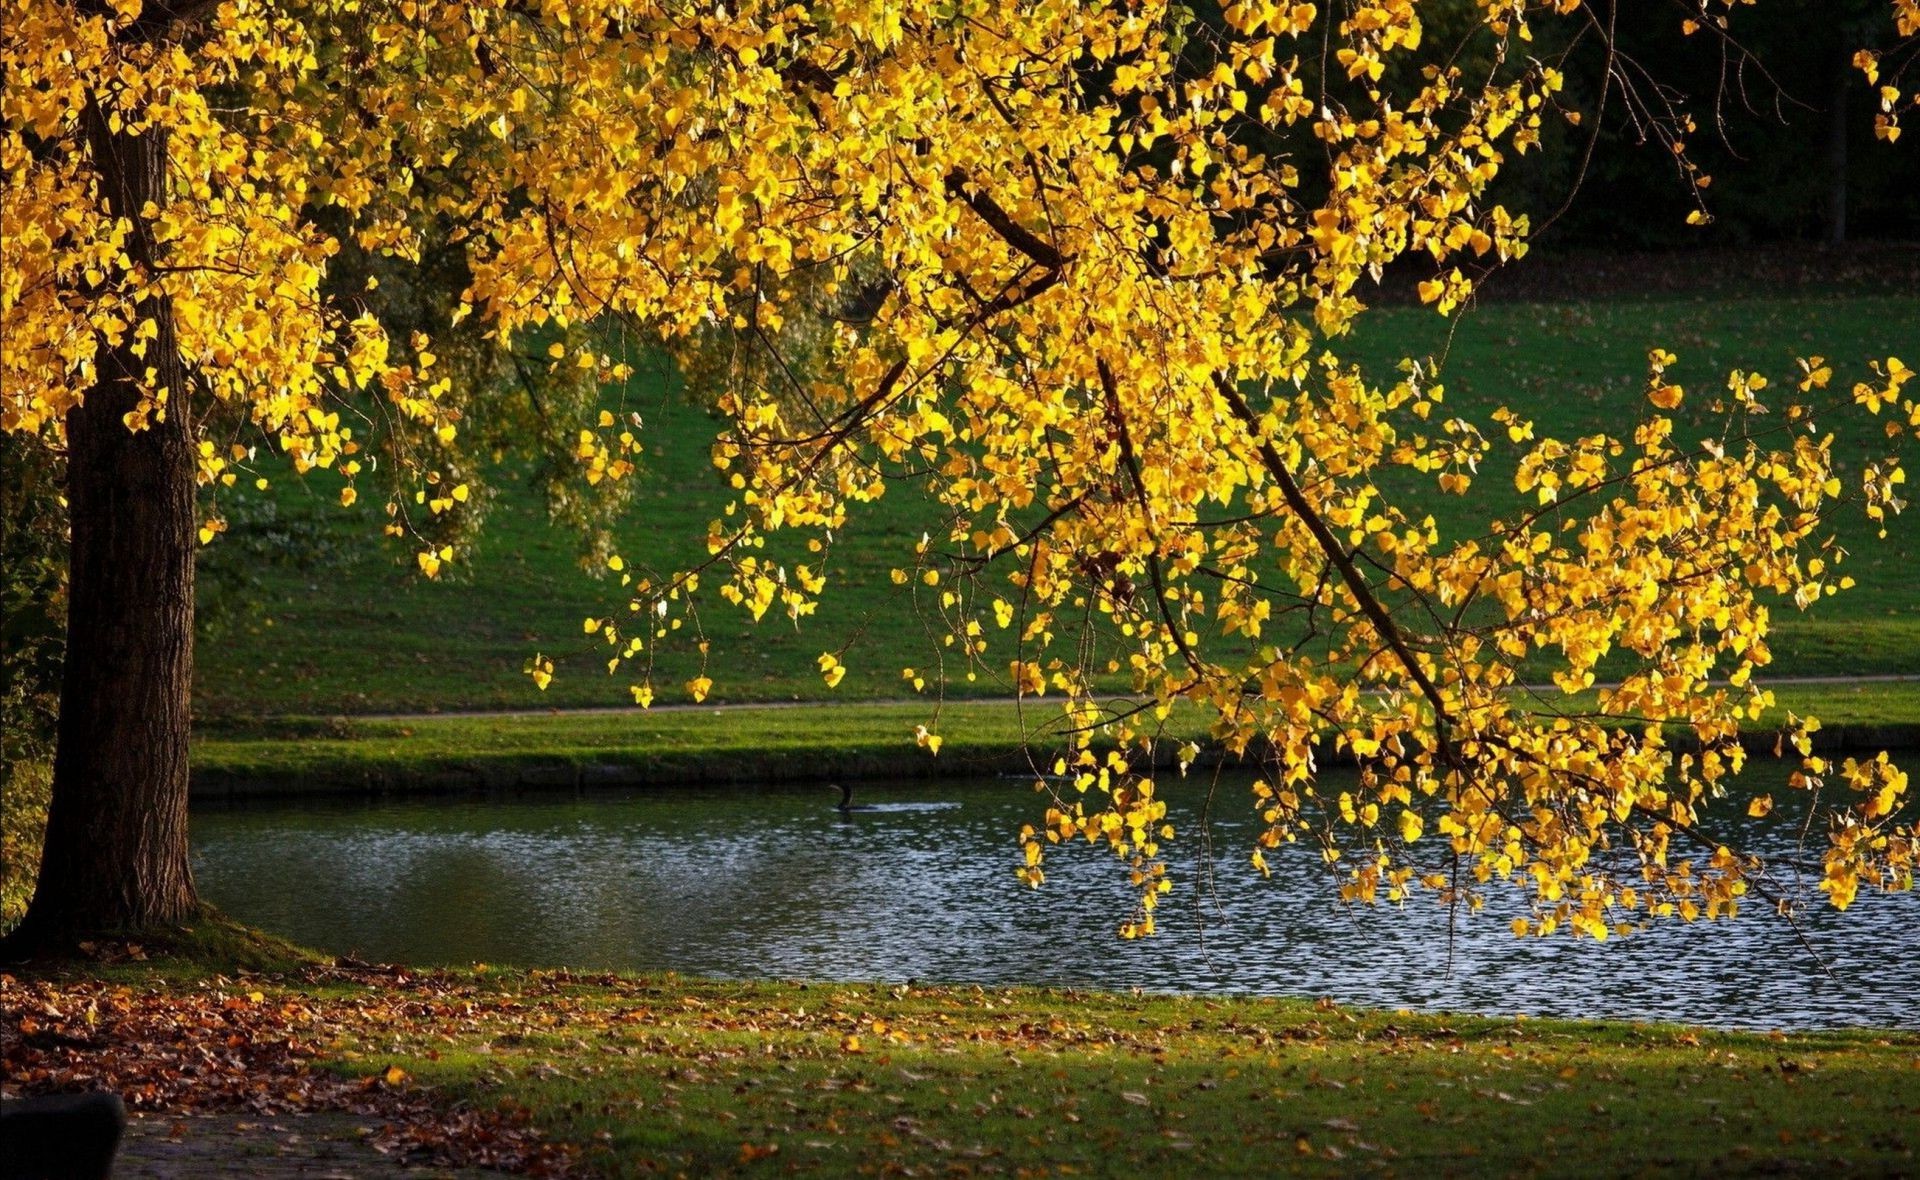 реки пруды и ручьи прудов и ручьев осень лист дерево древесины природа пейзаж сезон на открытом воздухе парк живописный озеро кленовый воды золото хорошую погоду филиал река пейзажи яркий